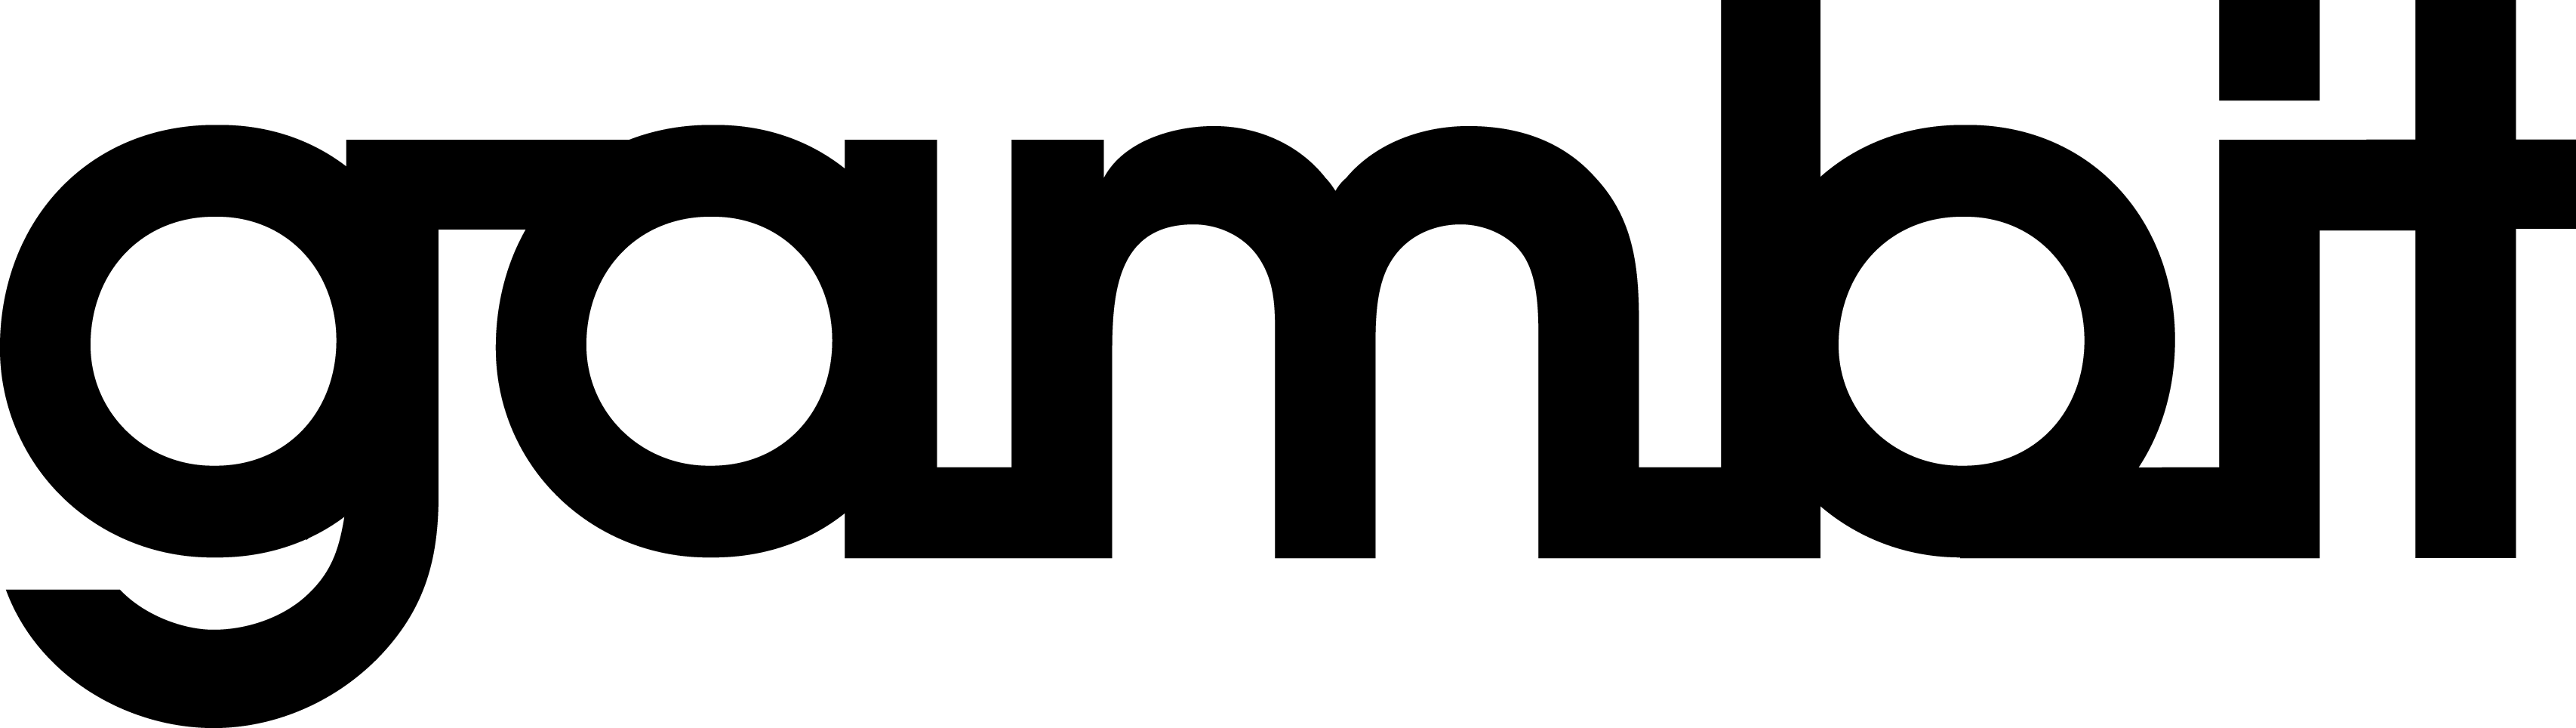 Gambit_logo